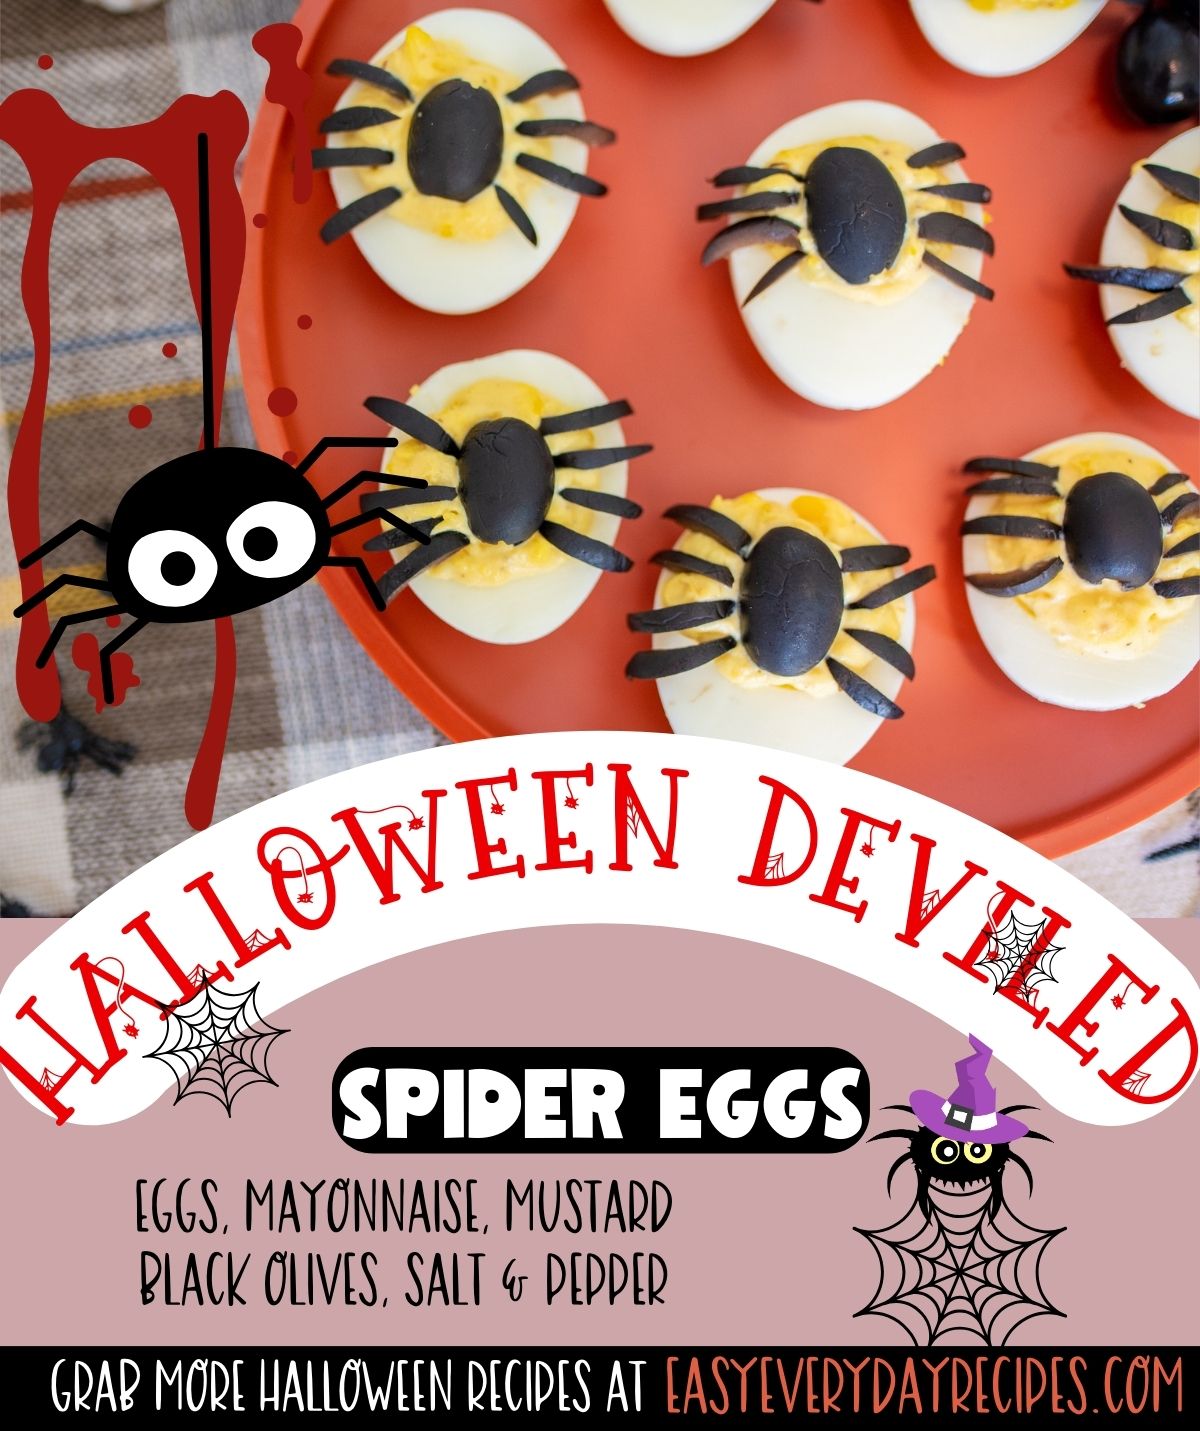 Halloween deviled spider eggs.